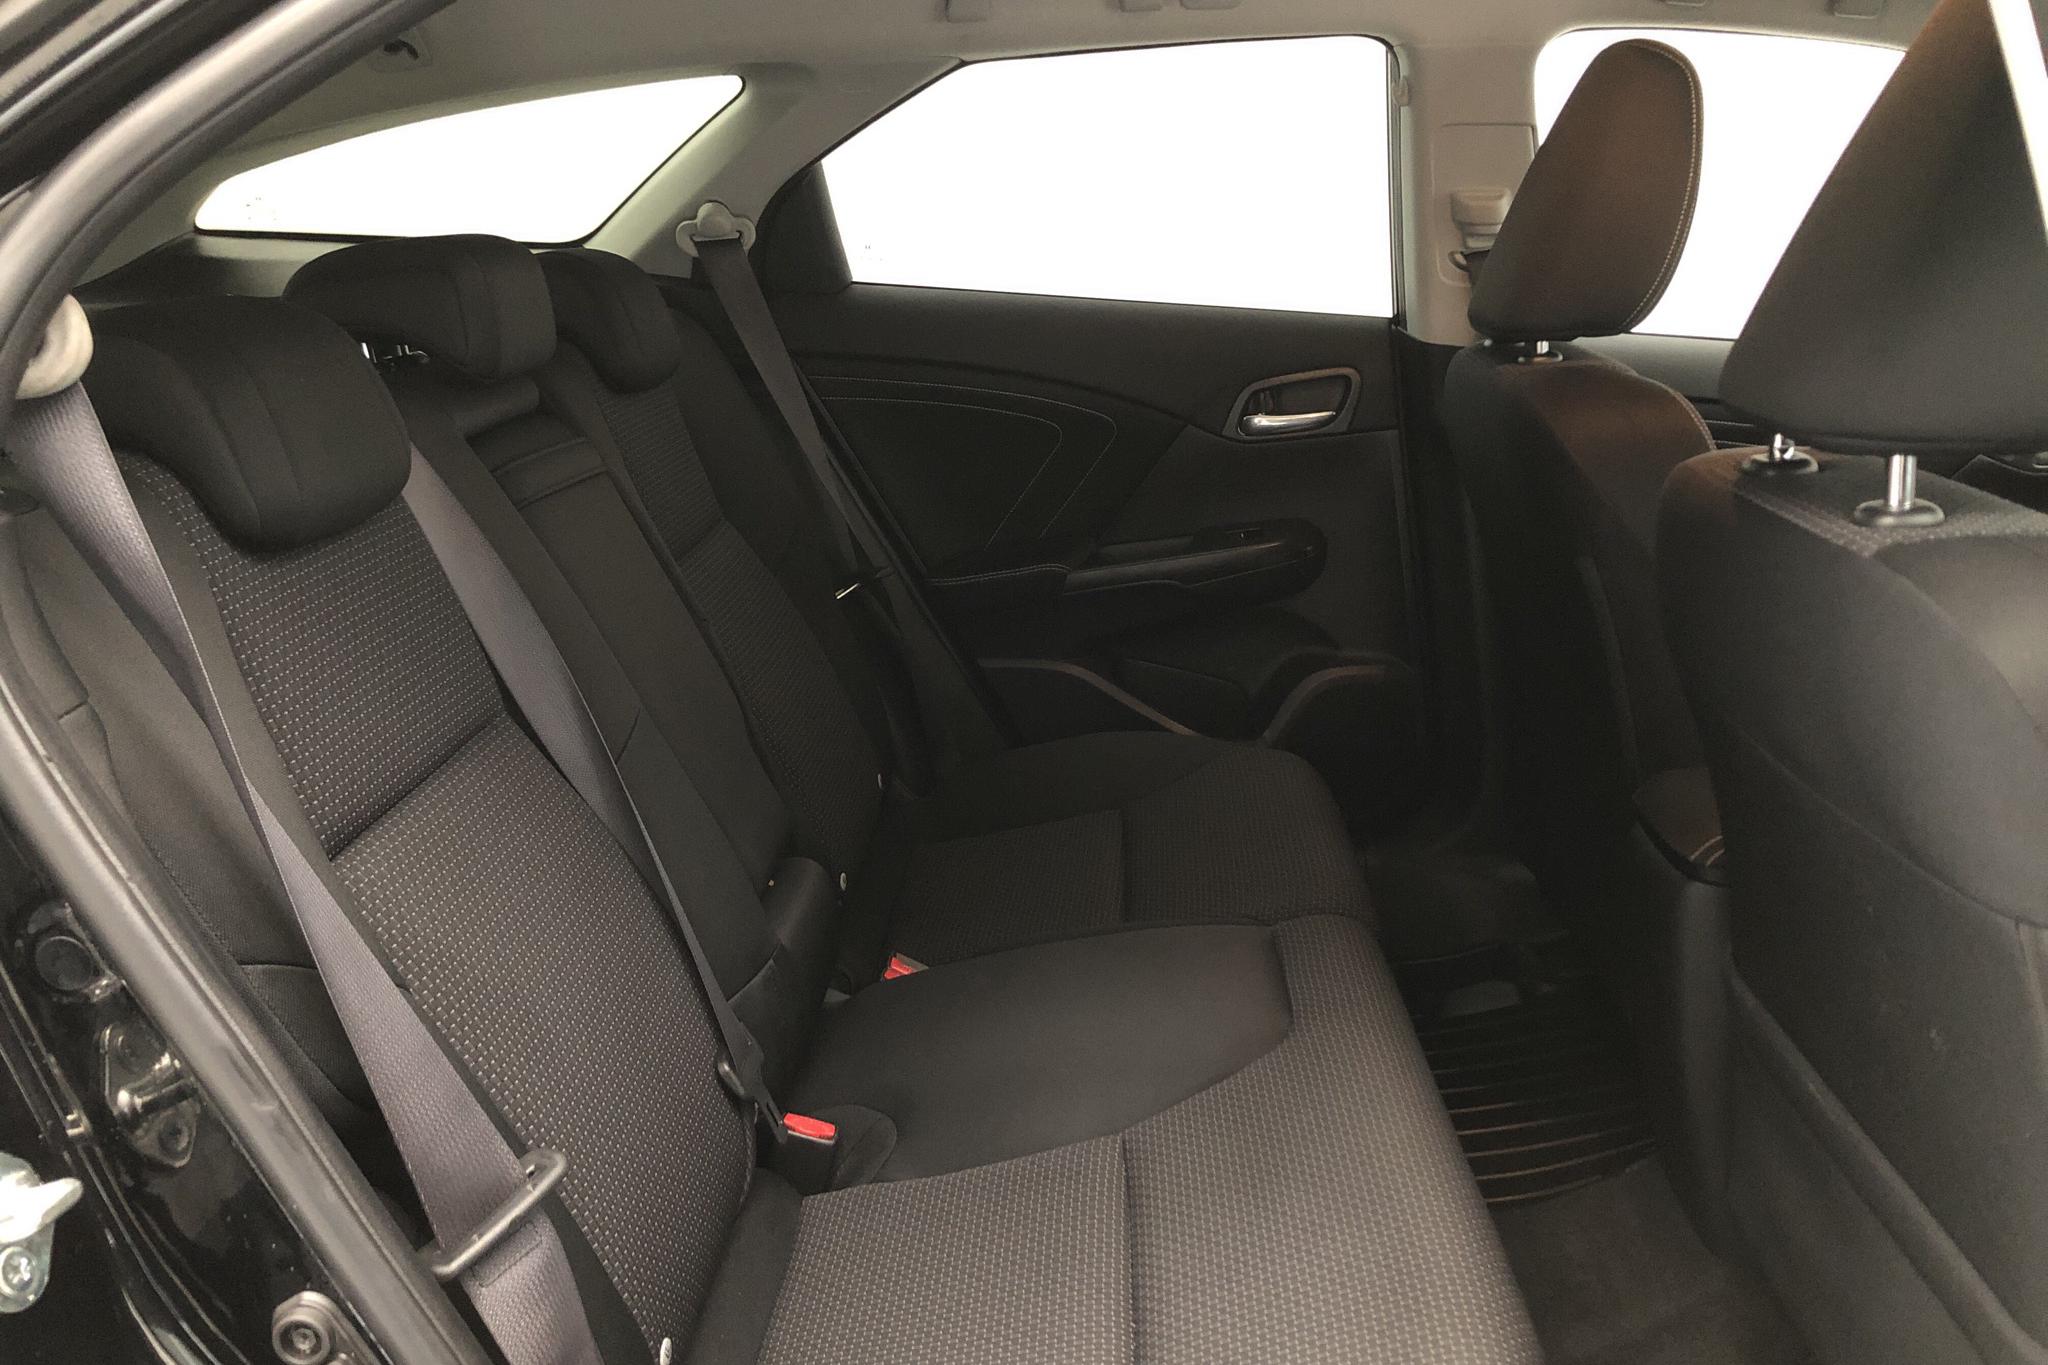 Honda Civic 1.8 i-VTEC Tourer (142hk) - 6 044 mil - Automat - svart - 2015